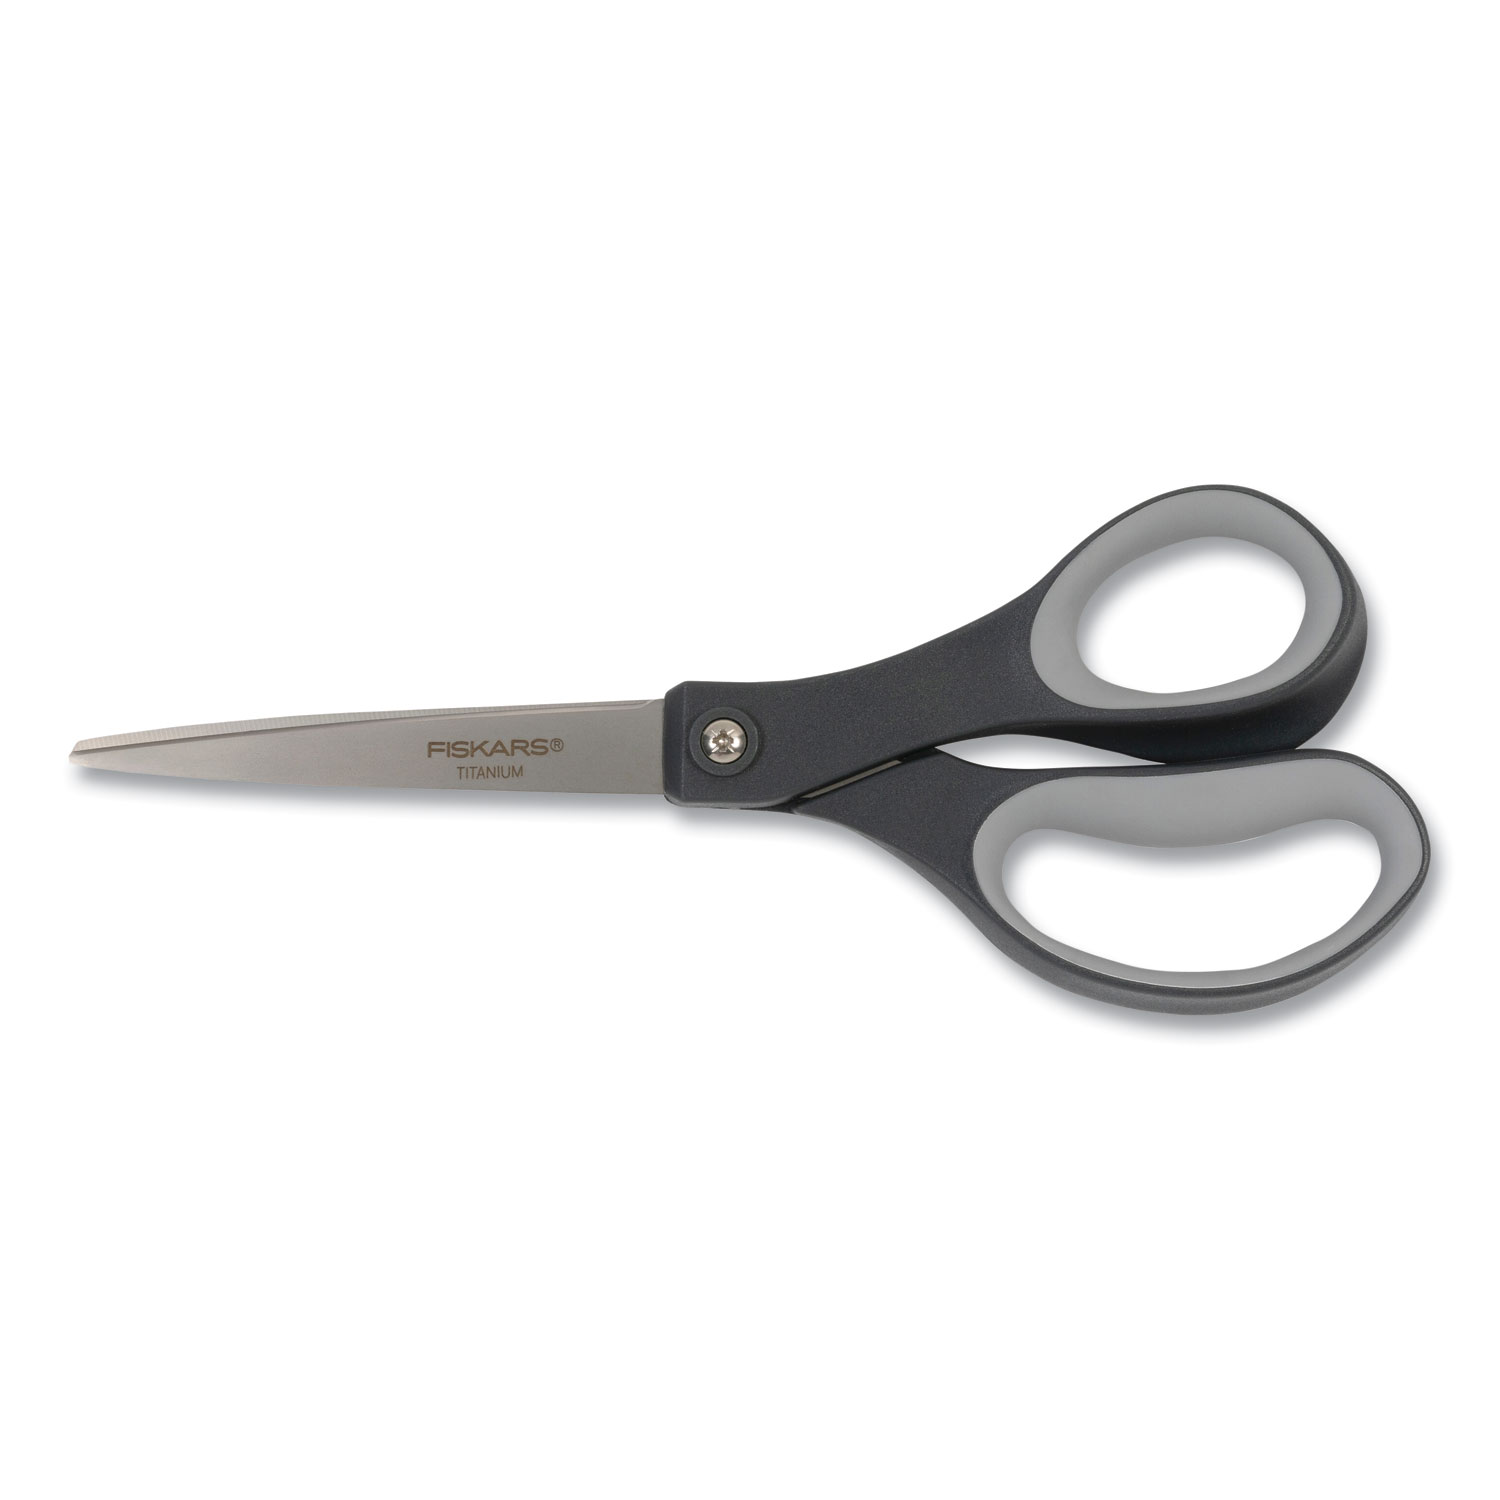  Softgrip Straight Titanium Scissors, 8-In. : Arts